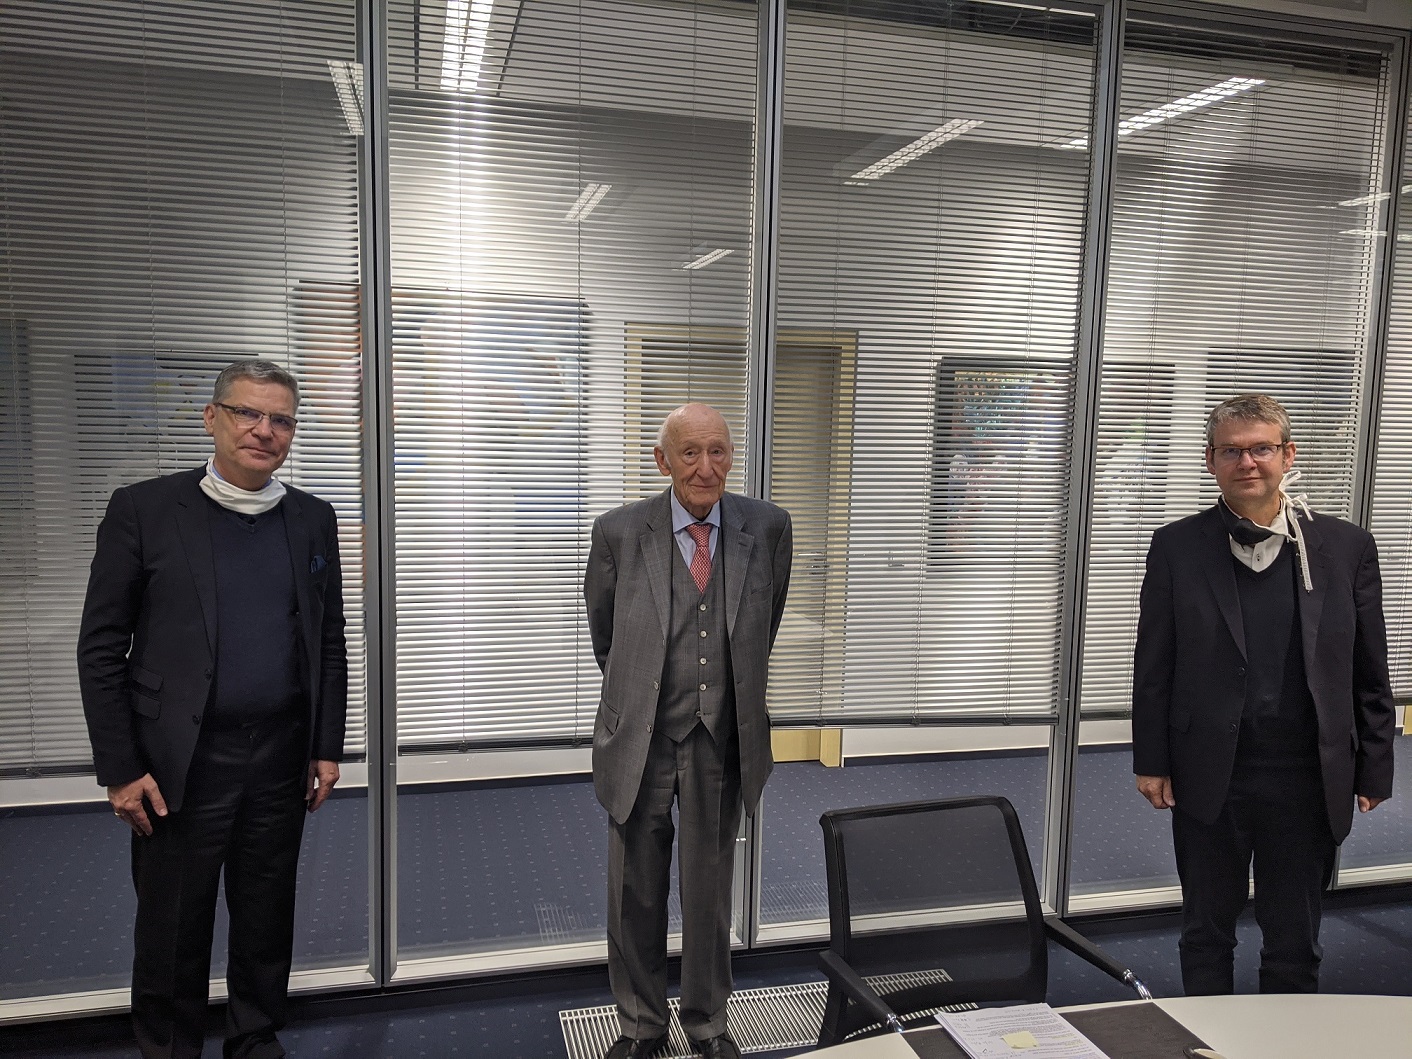 Drei Männer stehen in einem Konferenzraum